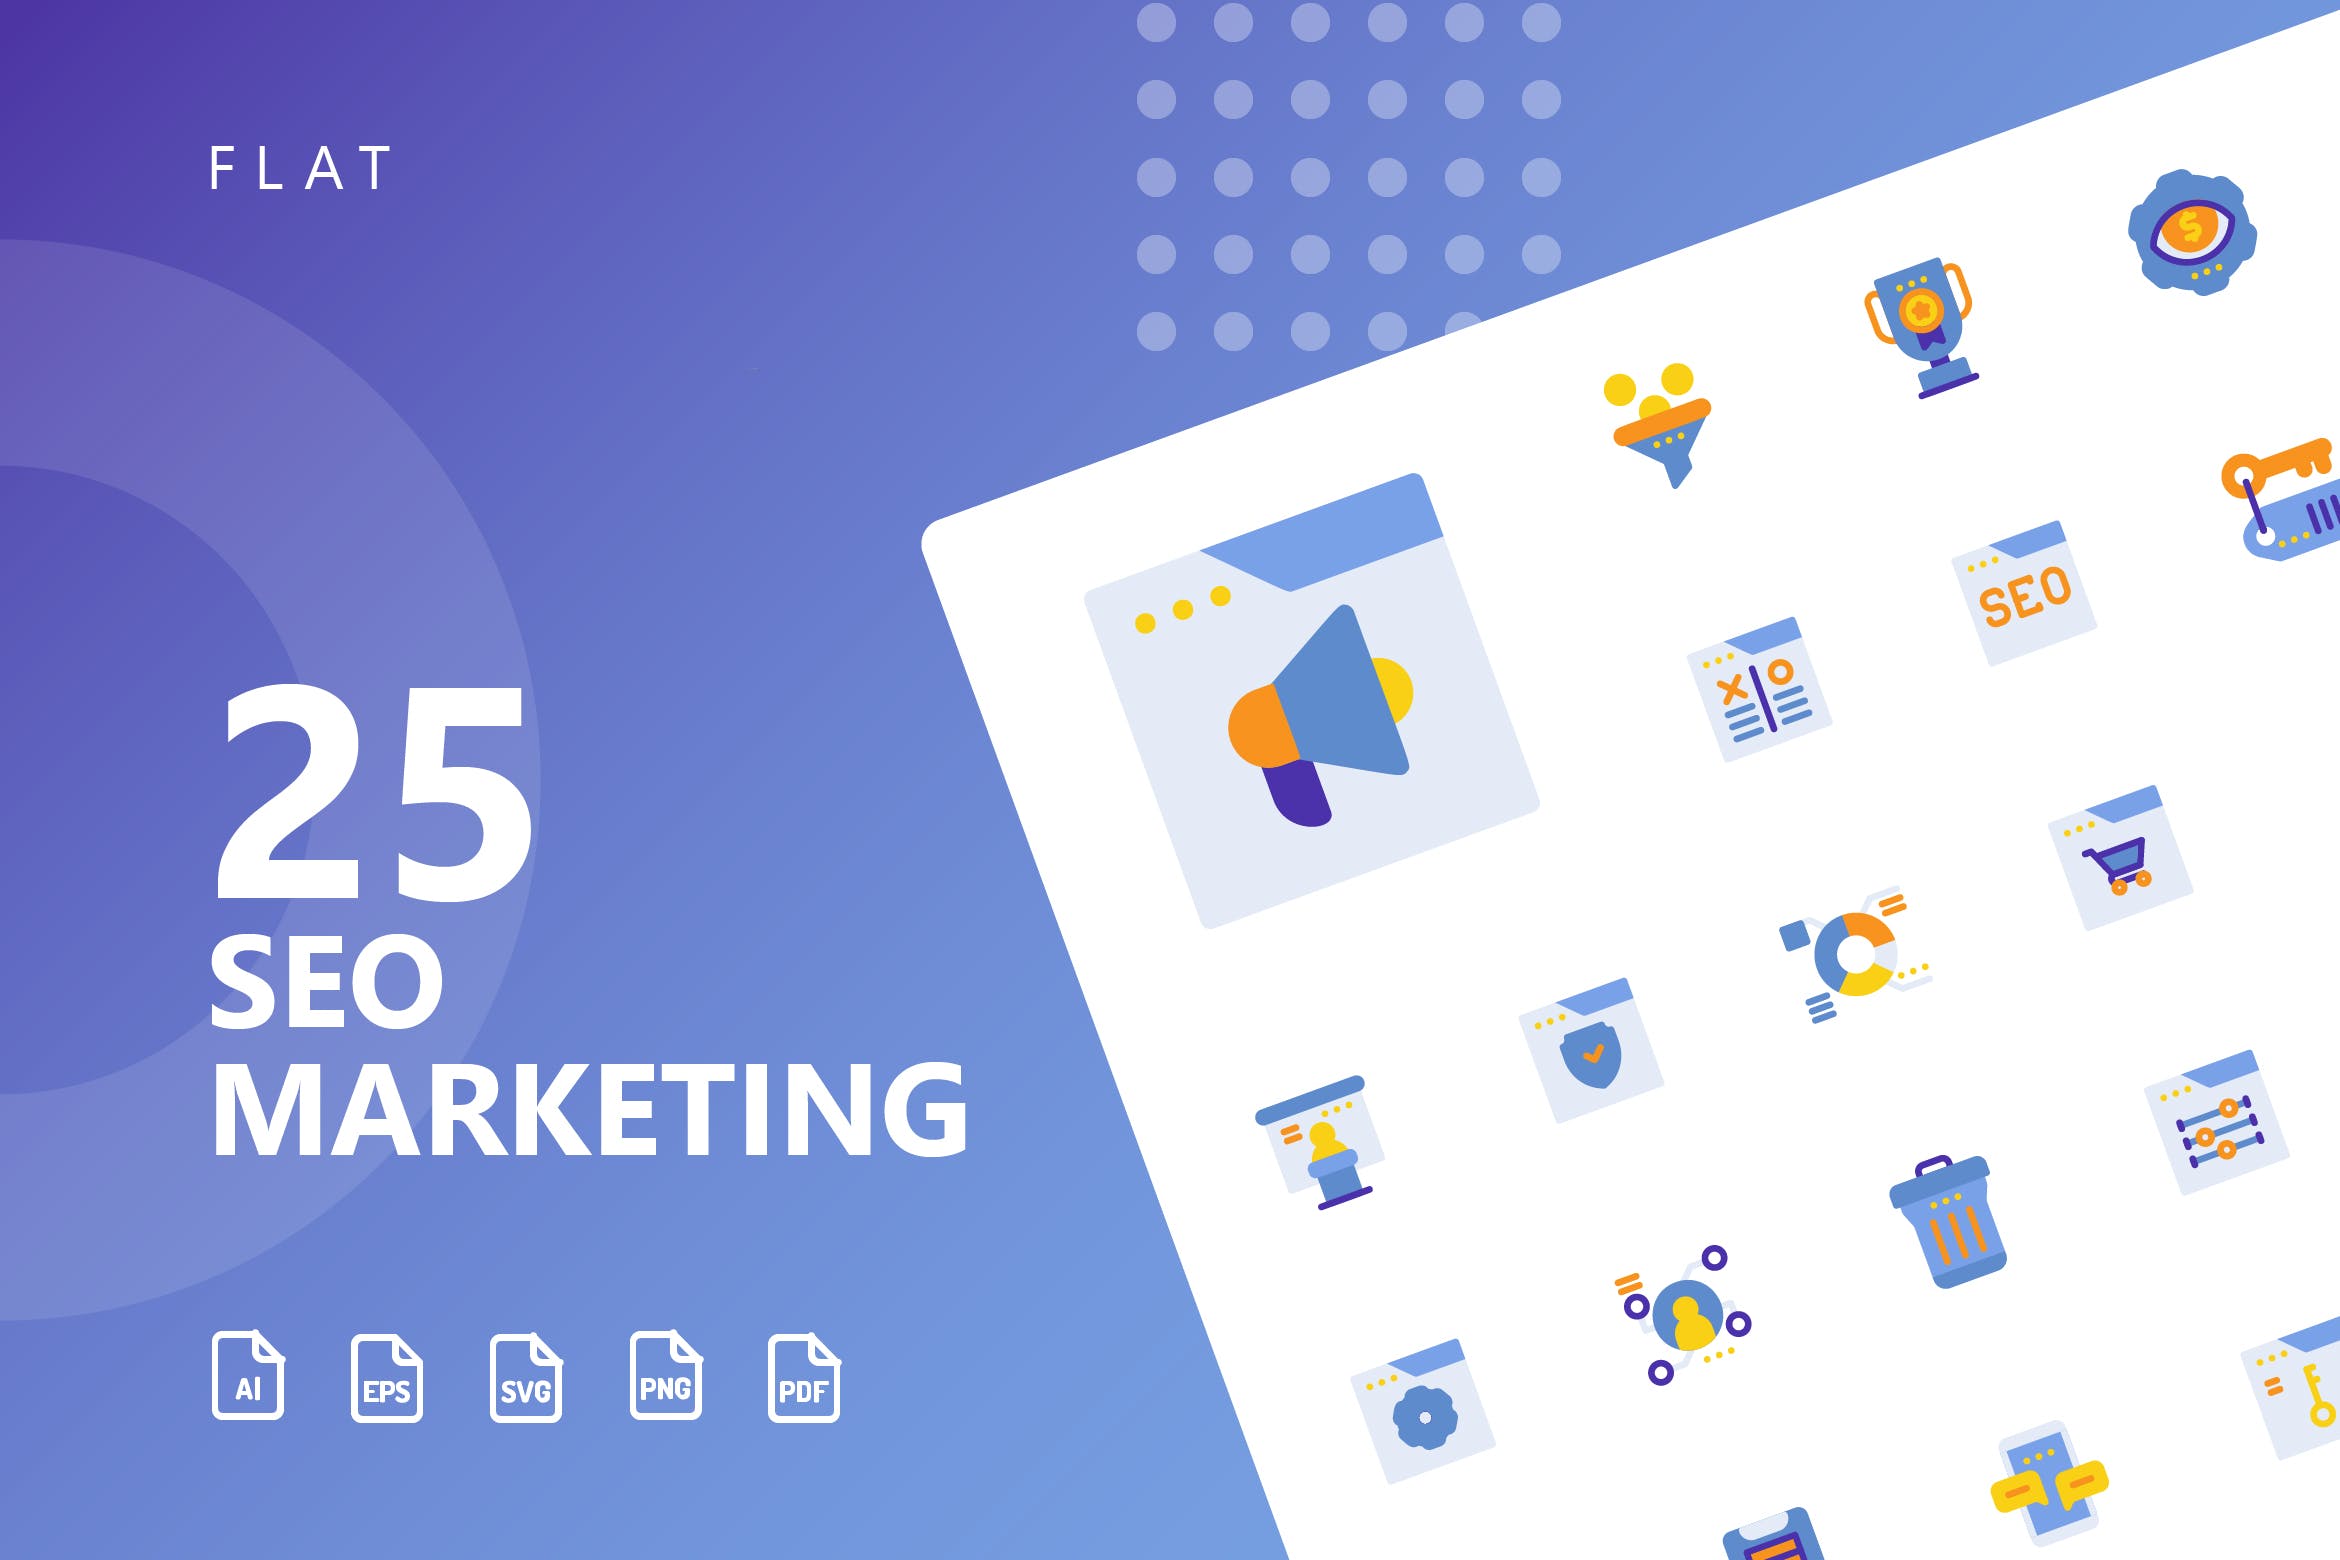 25枚SEO搜索引擎优化营销扁平化矢量16设计素材网精选图标v2 SEO Marketing Flat Icons插图